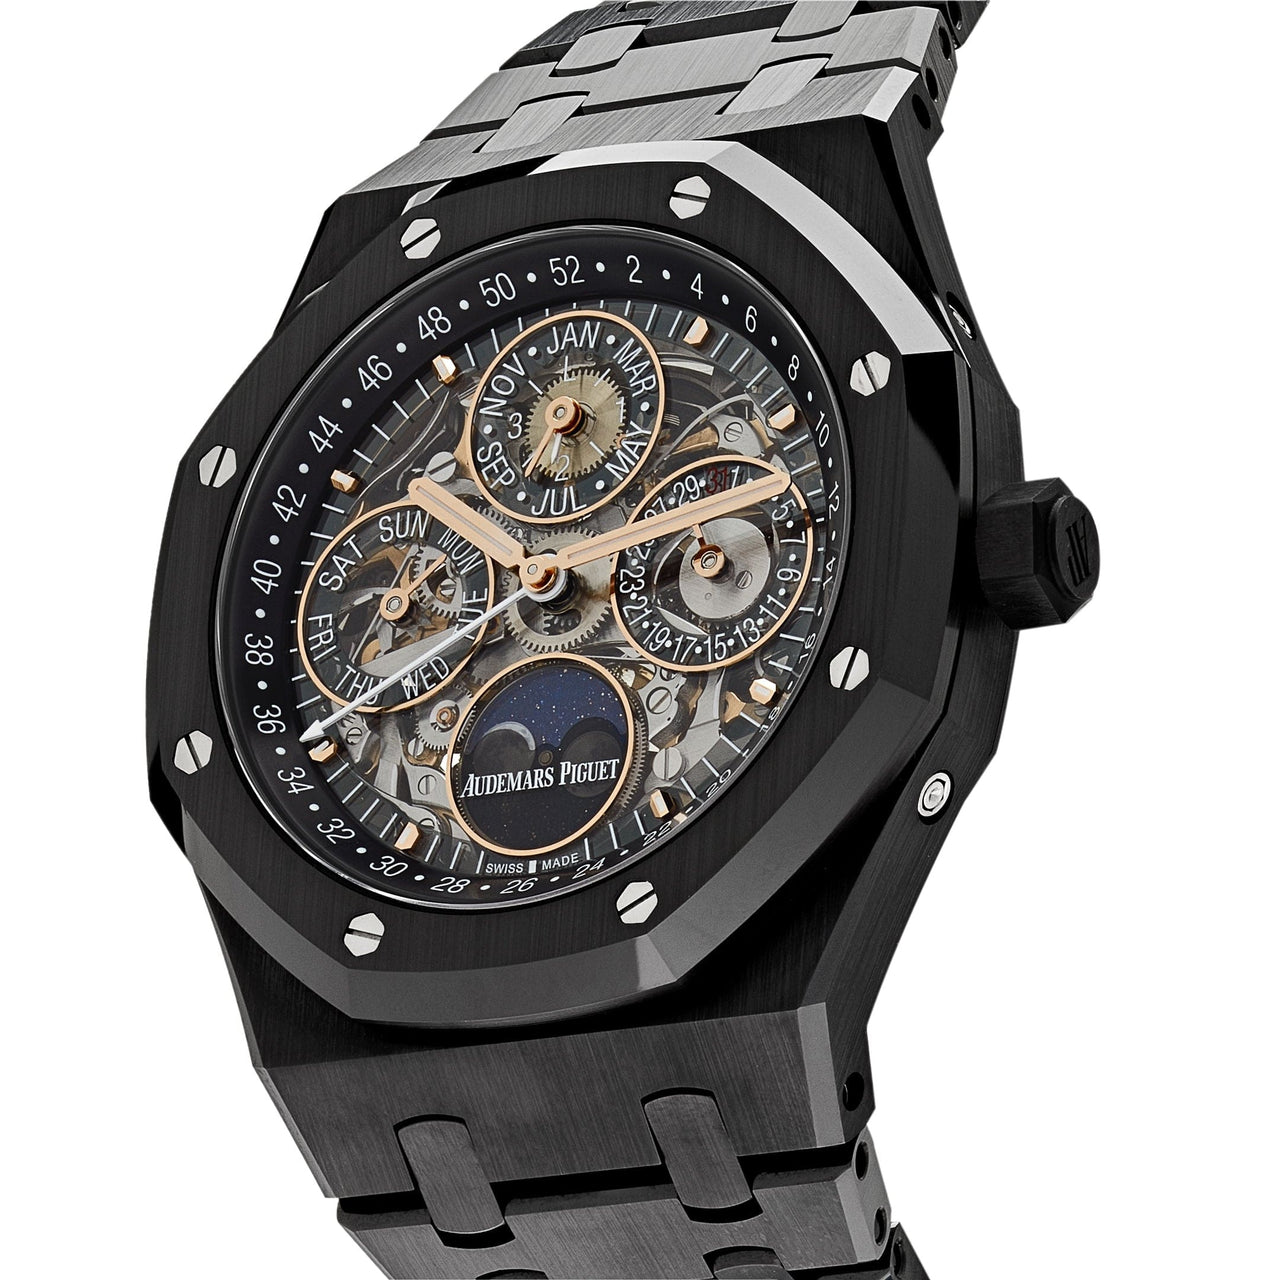 Luxury Watch Audemars Piguet Royal Oak Perpetual Calendar Openworked Black Ceramic 26585CE.OO.1225CE.01 Wrist Aficionado